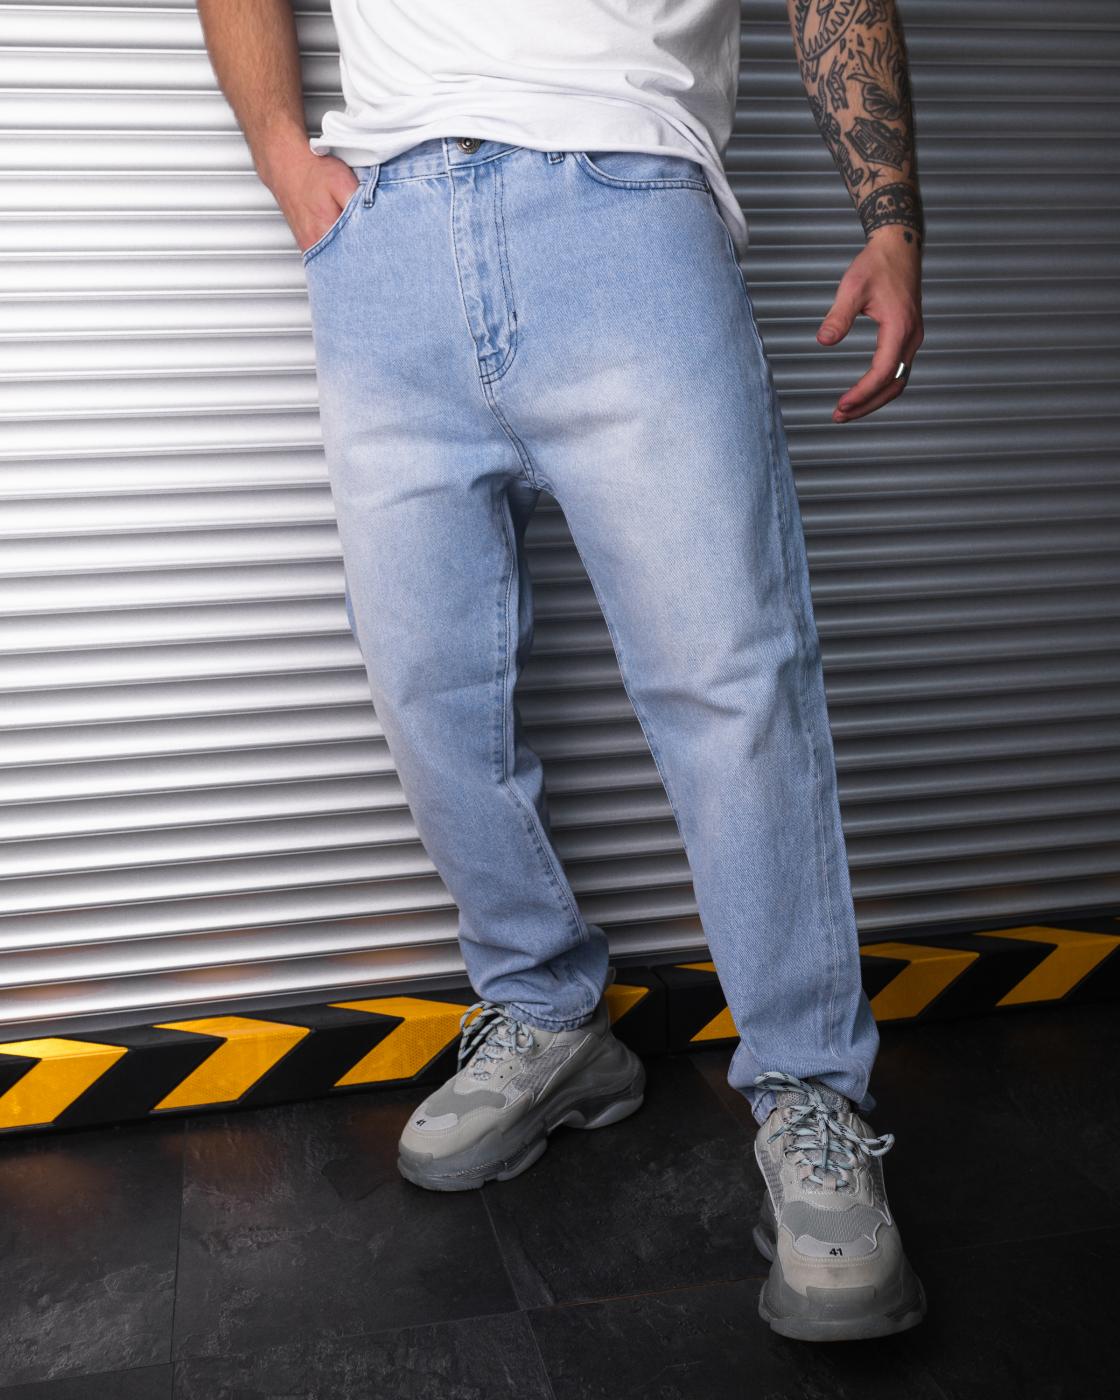 Как купить классические мужские джинсы оптом с гарантией качества и доставкой